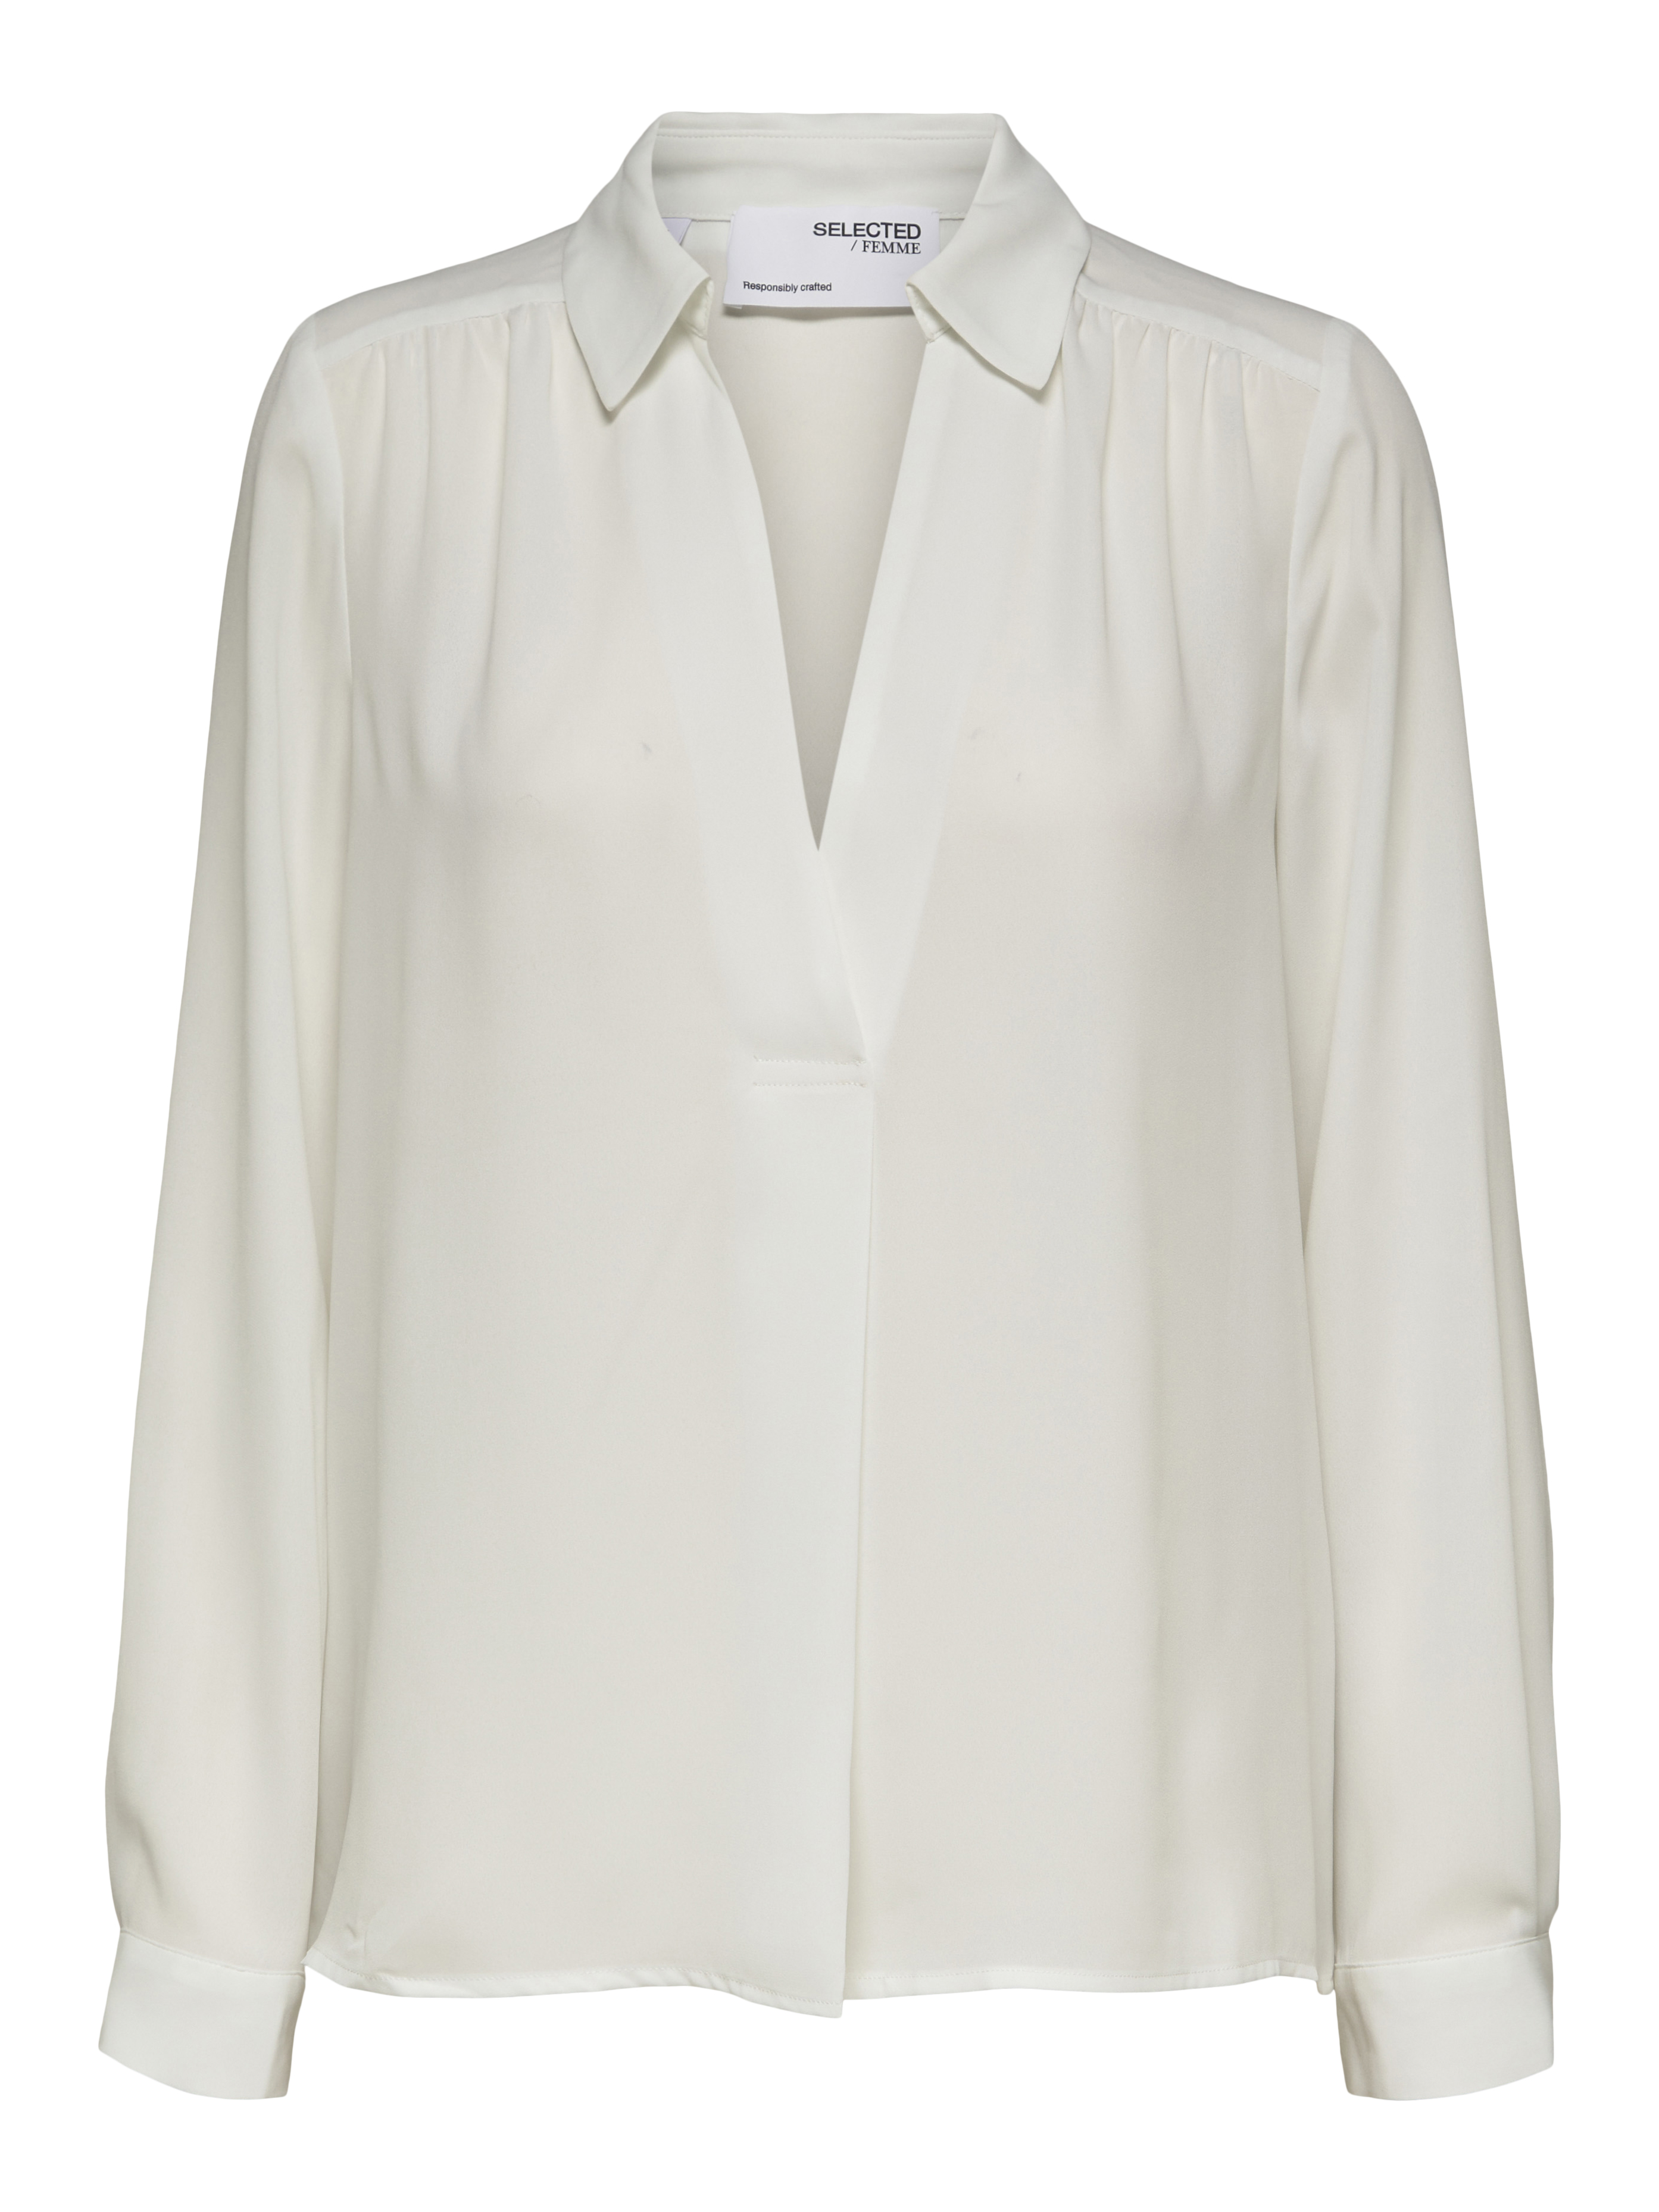 Bardziej zrównoważony CsoRU Selected Femme Tall Bluzka Lina w kolorze Naturalna Bielm 